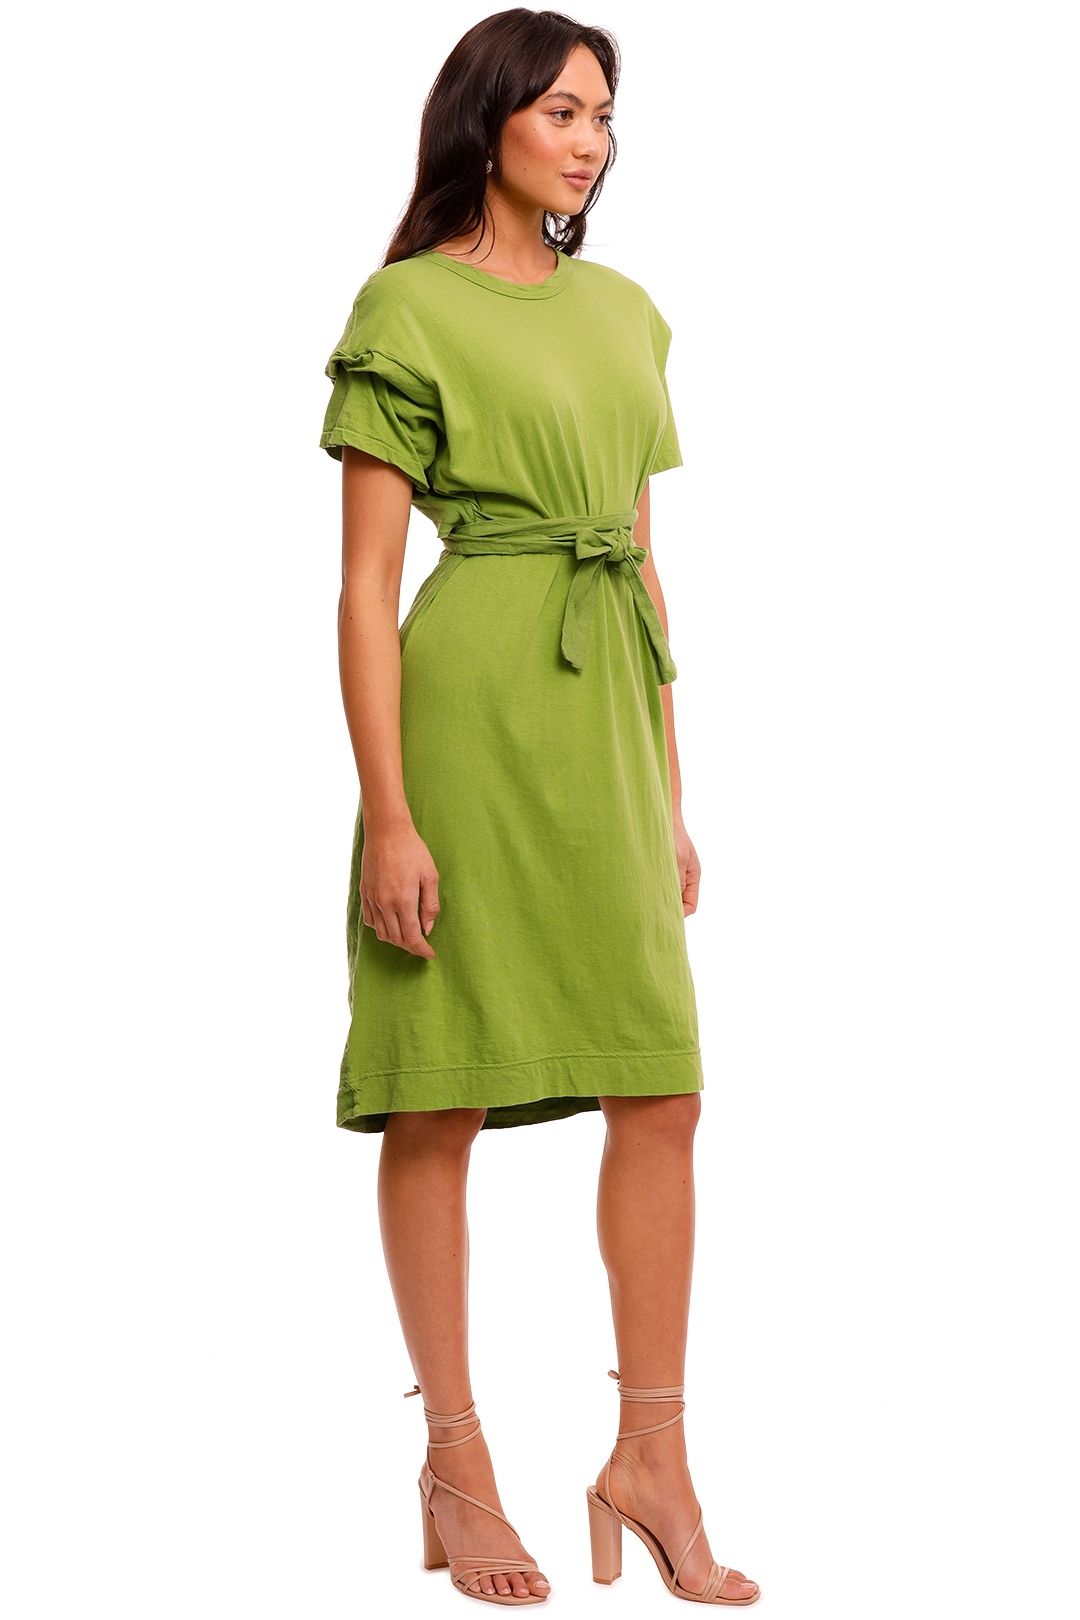 Bassike Open Back Contrast Short Sleeve Dress Green